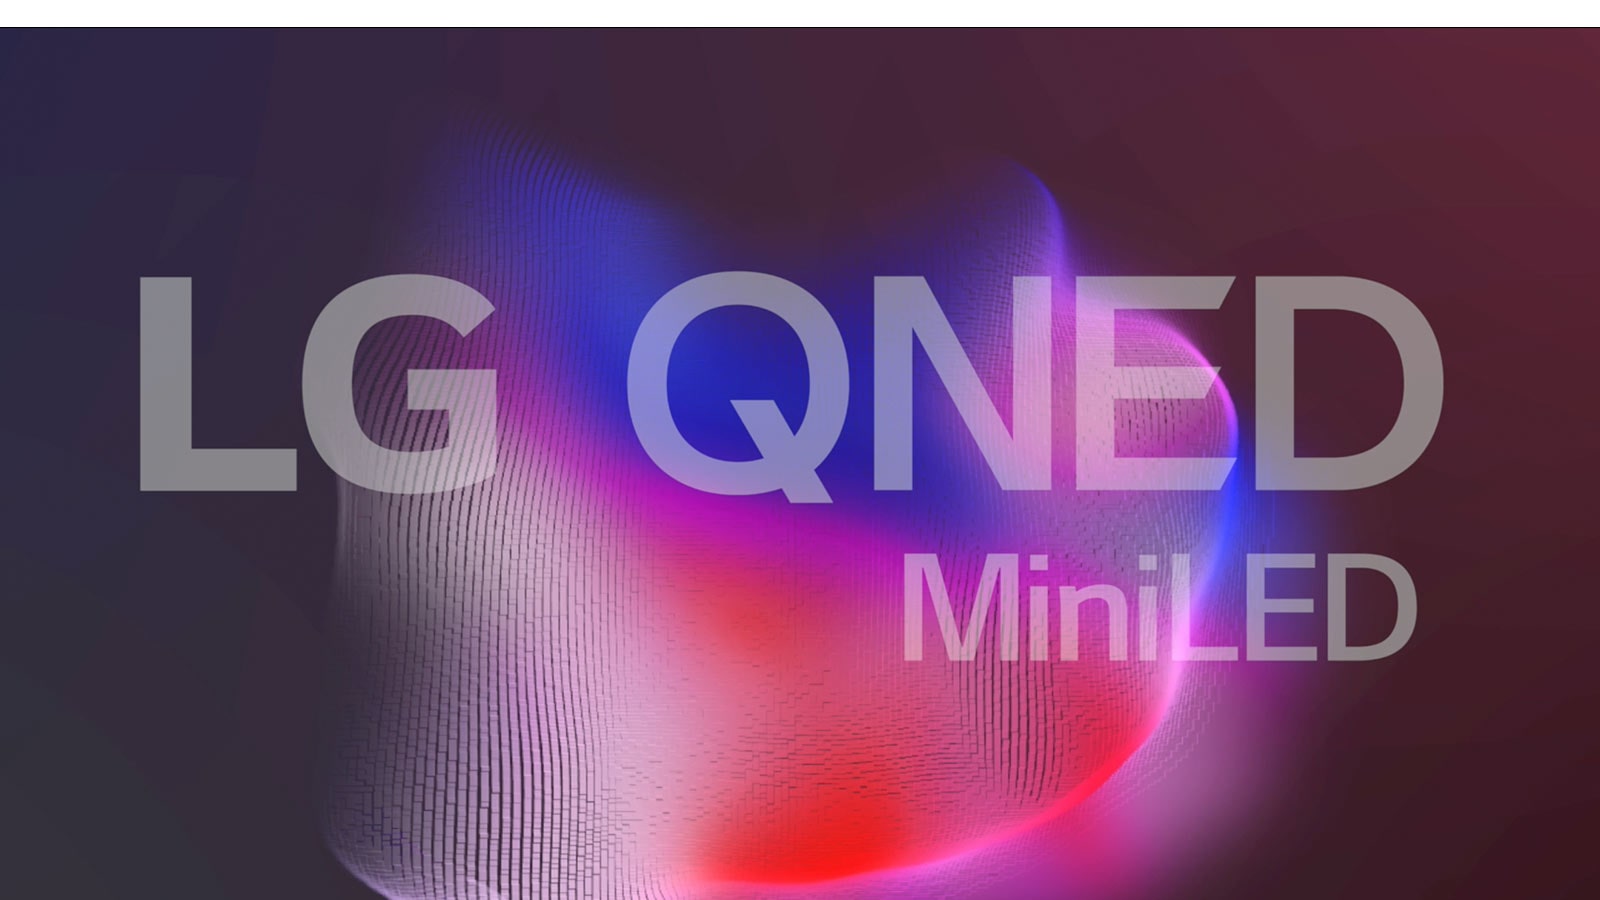 Μια οθόνη που δείχνει το λογότυπο LG QNED Mini LED και μικρά, φωτεινά σωματίδια που σχηματίζουν ένα ψάρι Μπέτα (αναπαραγωγή βίντεο).